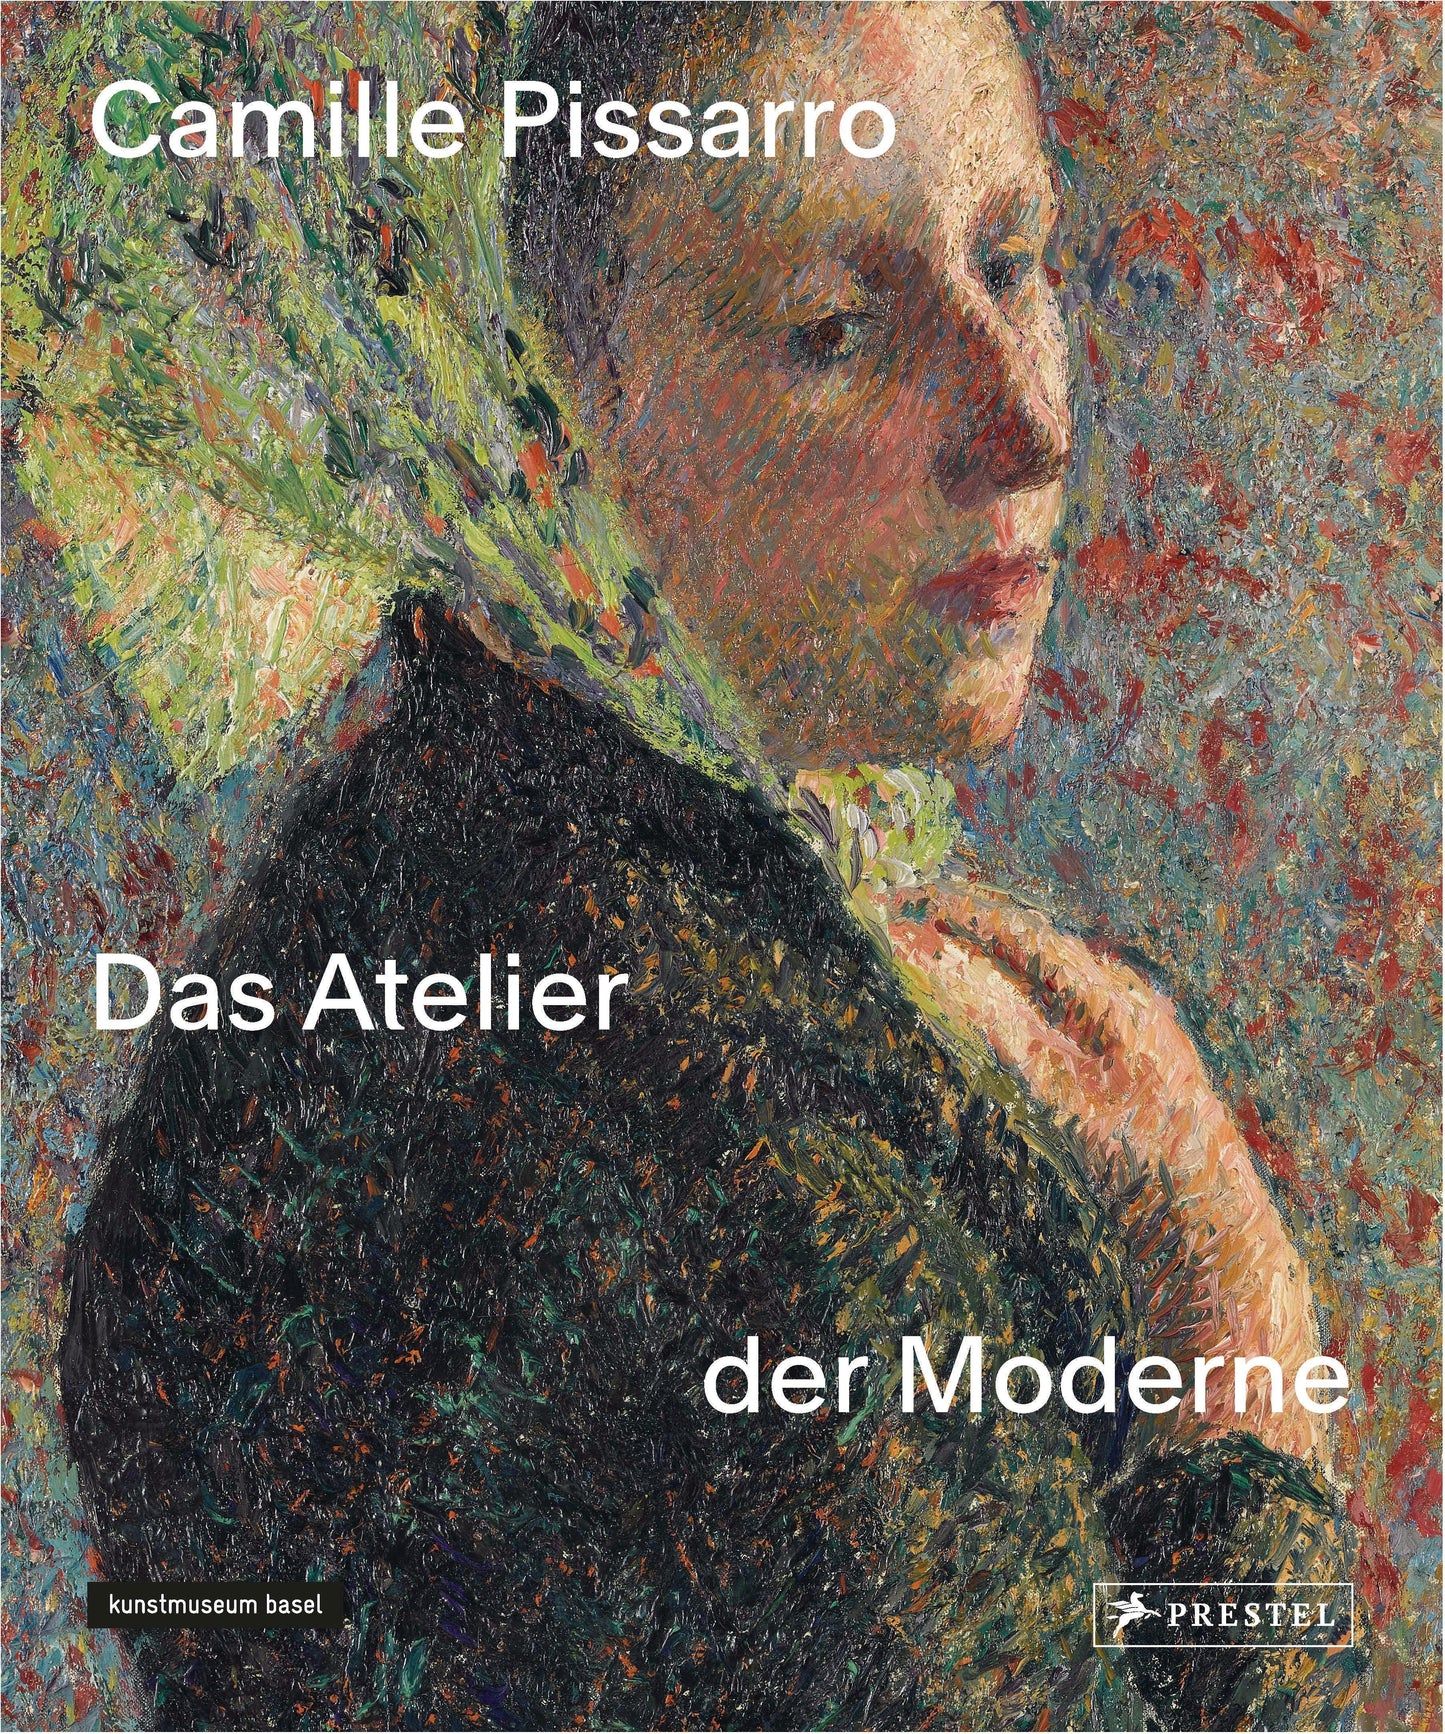 Camille Pissarro: Das Atelier der Moderne